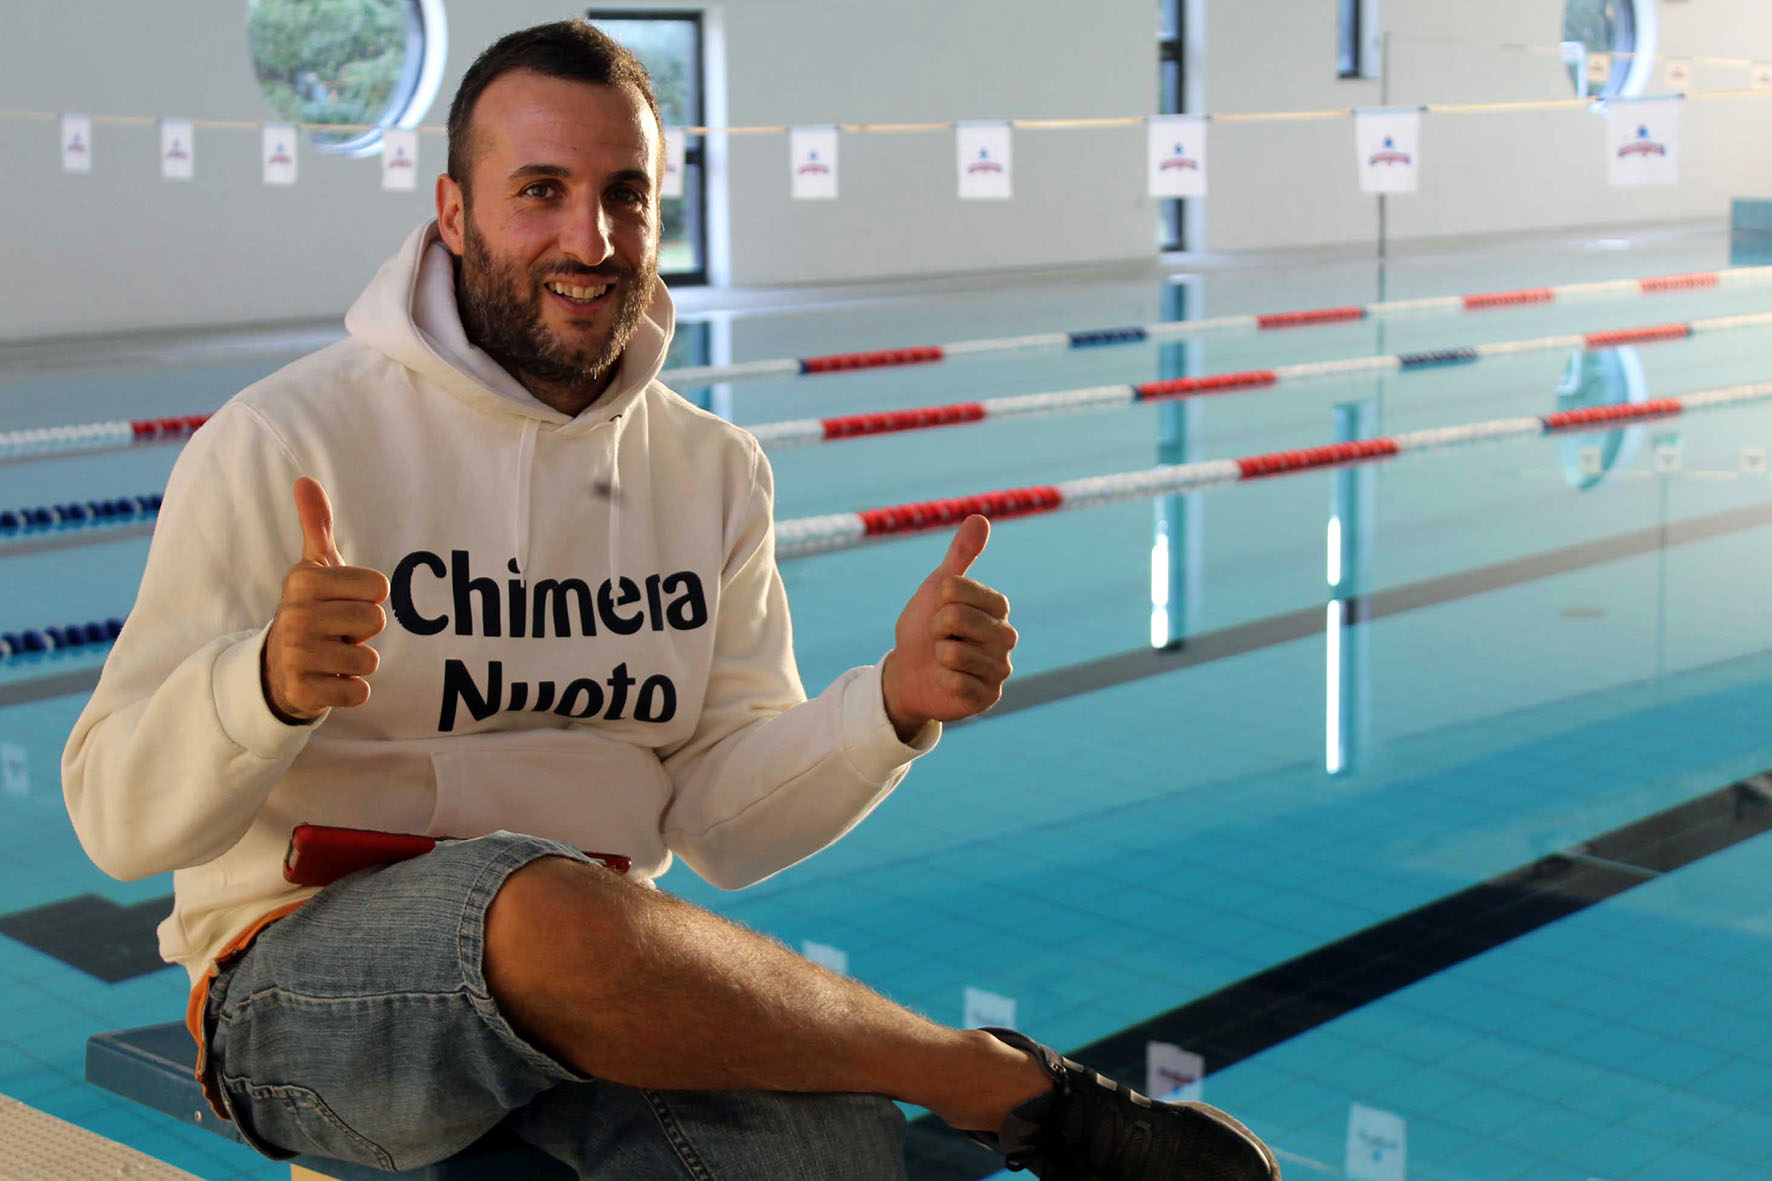 La Chimera Nuoto a confronto con la campionessa del mondo Bianchi in una formazione online